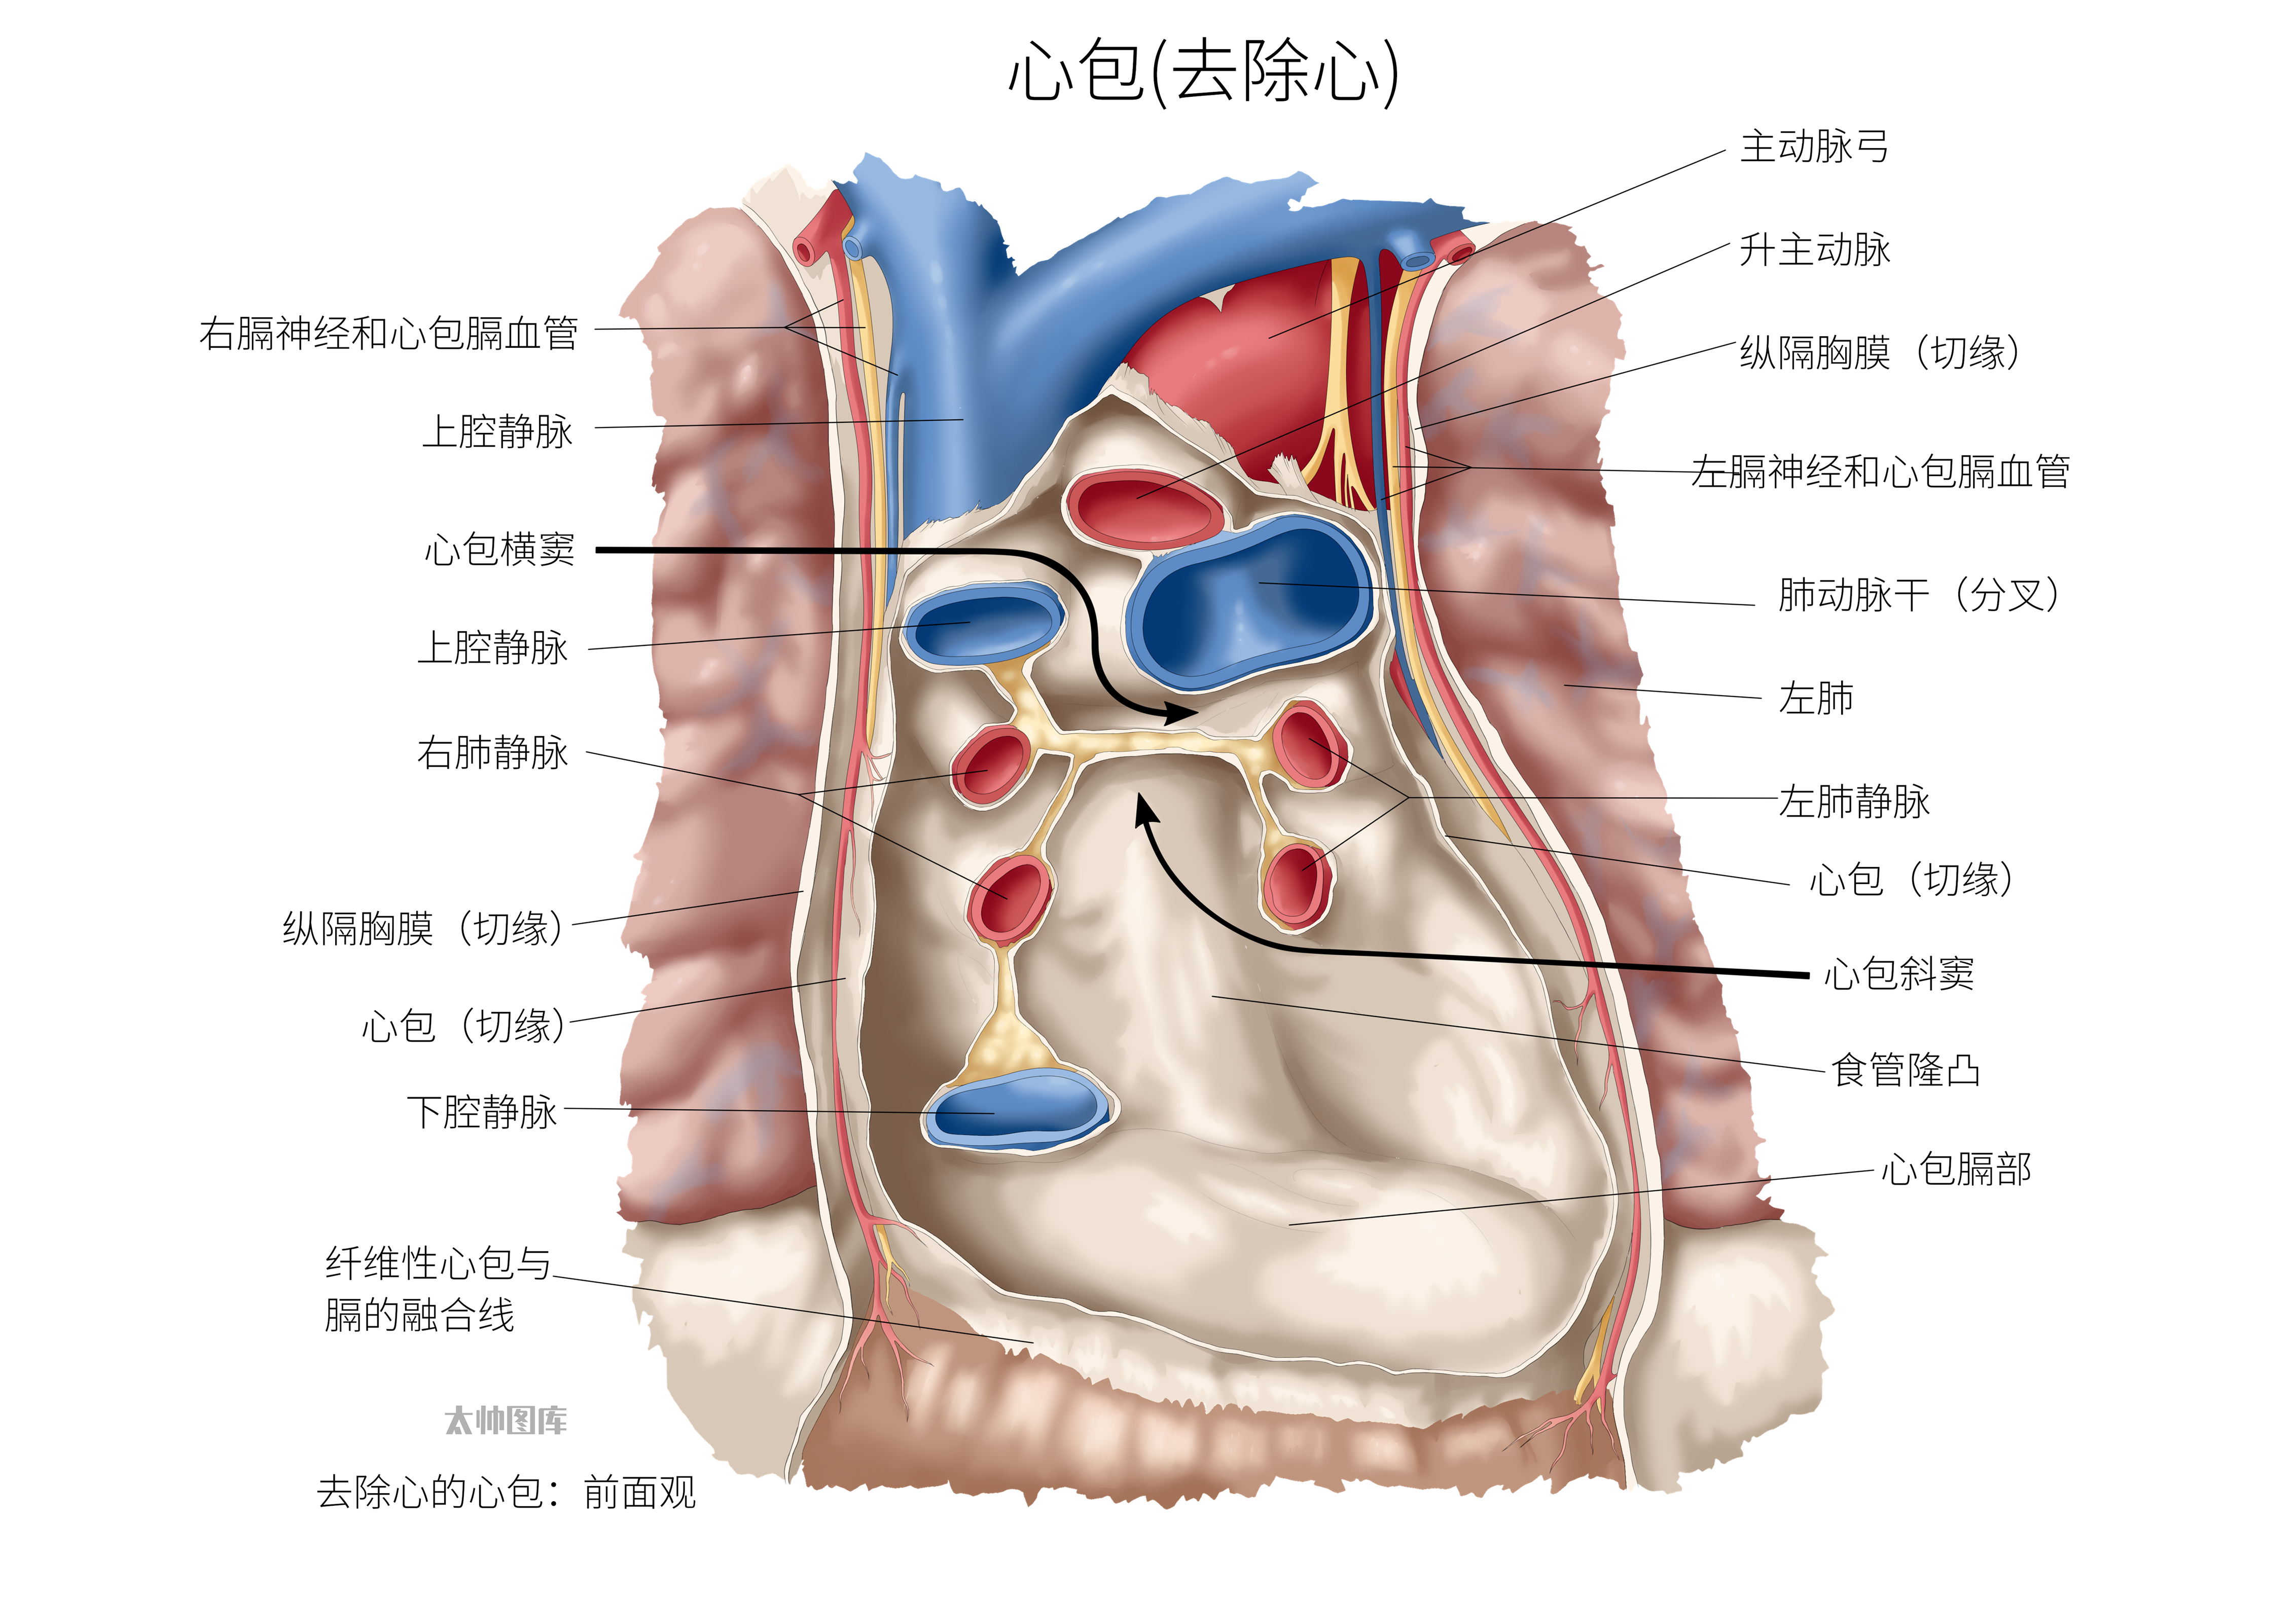 纤维心包和浆膜心包图片